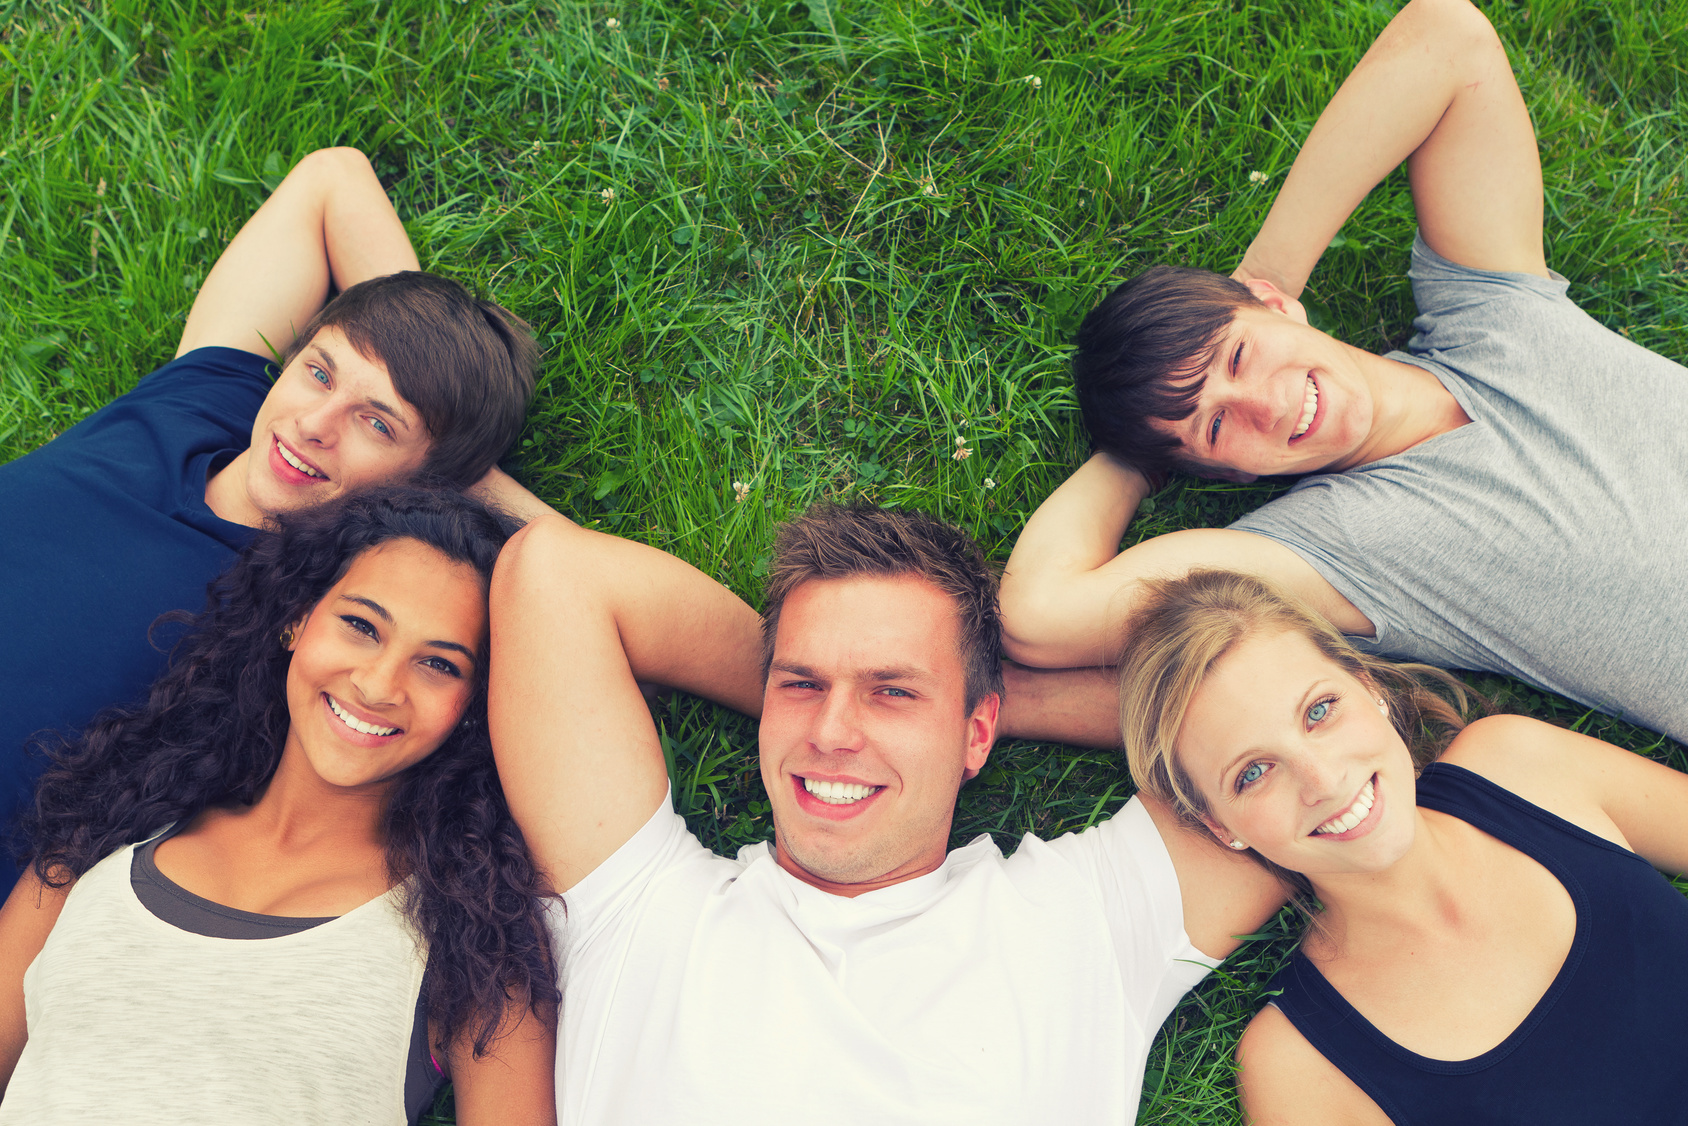 Man sieht den Oberkörper von 5 jungen Menschen, die im Gras liegen und nach oben lächeln. 